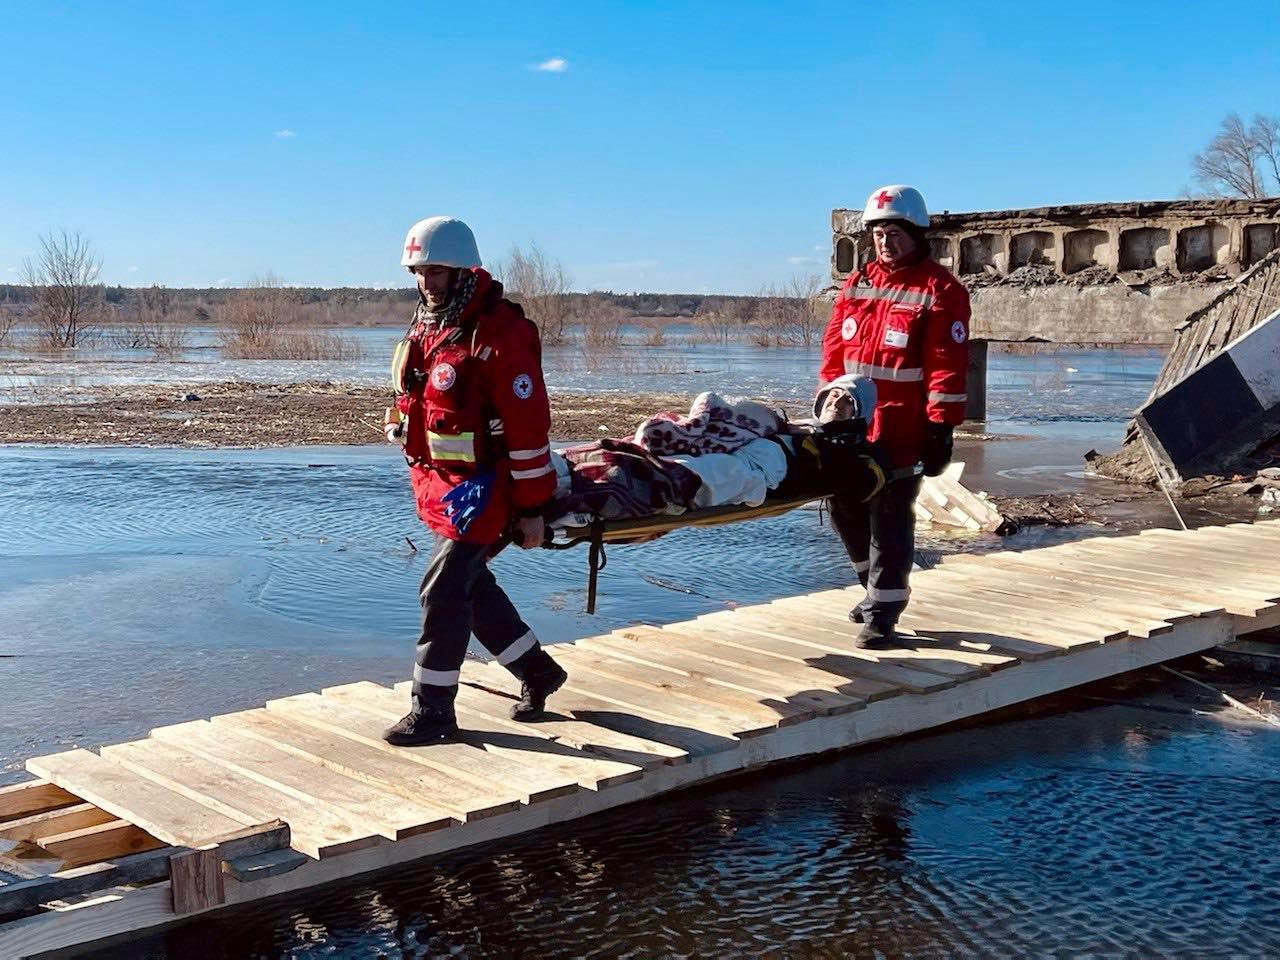 Due volontari della Croce Rossa ucraina evacuano un ferito coperto da una coperta su una barella. Attraversano un ponte di legno provvisorio. I due volontari indossano il casco bianco e la giacca rossa della Croce Rossa.